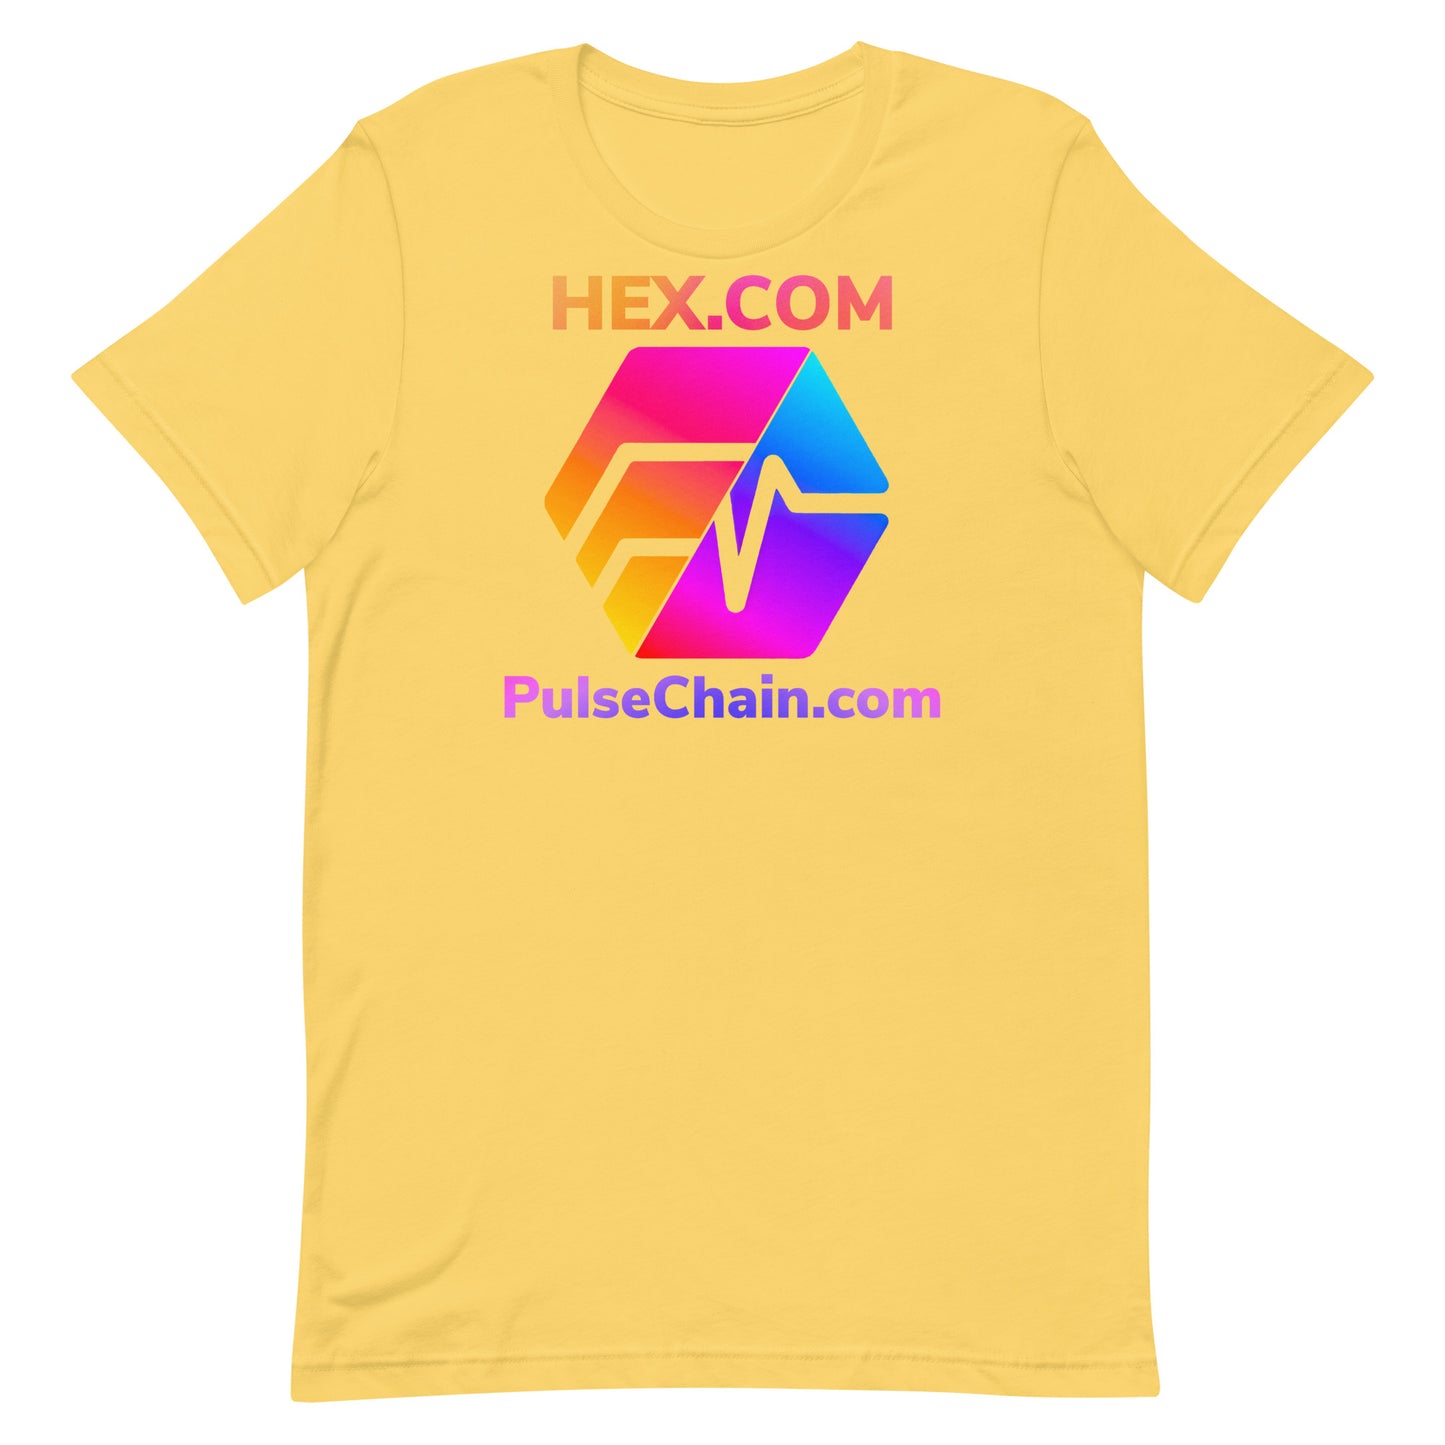 HEX.COM and PulseChain.com Unisex T-Shirt